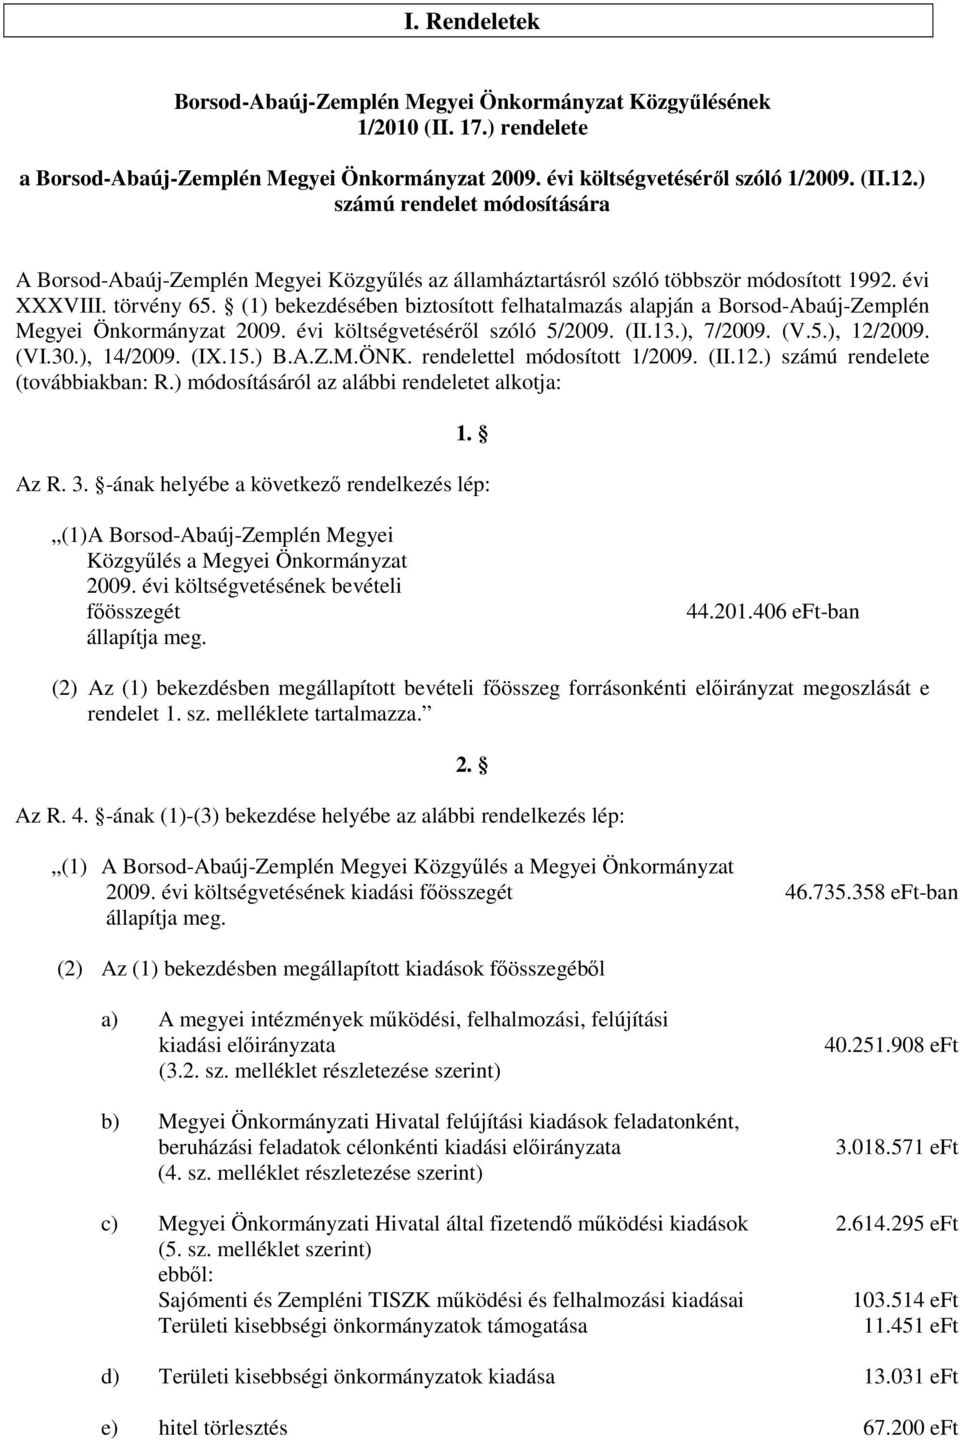 (1) bekezdésében biztosított felhatalmazás alapján a Borsod-Abaúj-Zemplén Megyei Önkormányzat 2009. évi költségvetésérıl szóló 5/2009. (II.13.), 7/2009. (V.5.), 12/2009. (VI.30.), 14/2009. (IX.15.) B.